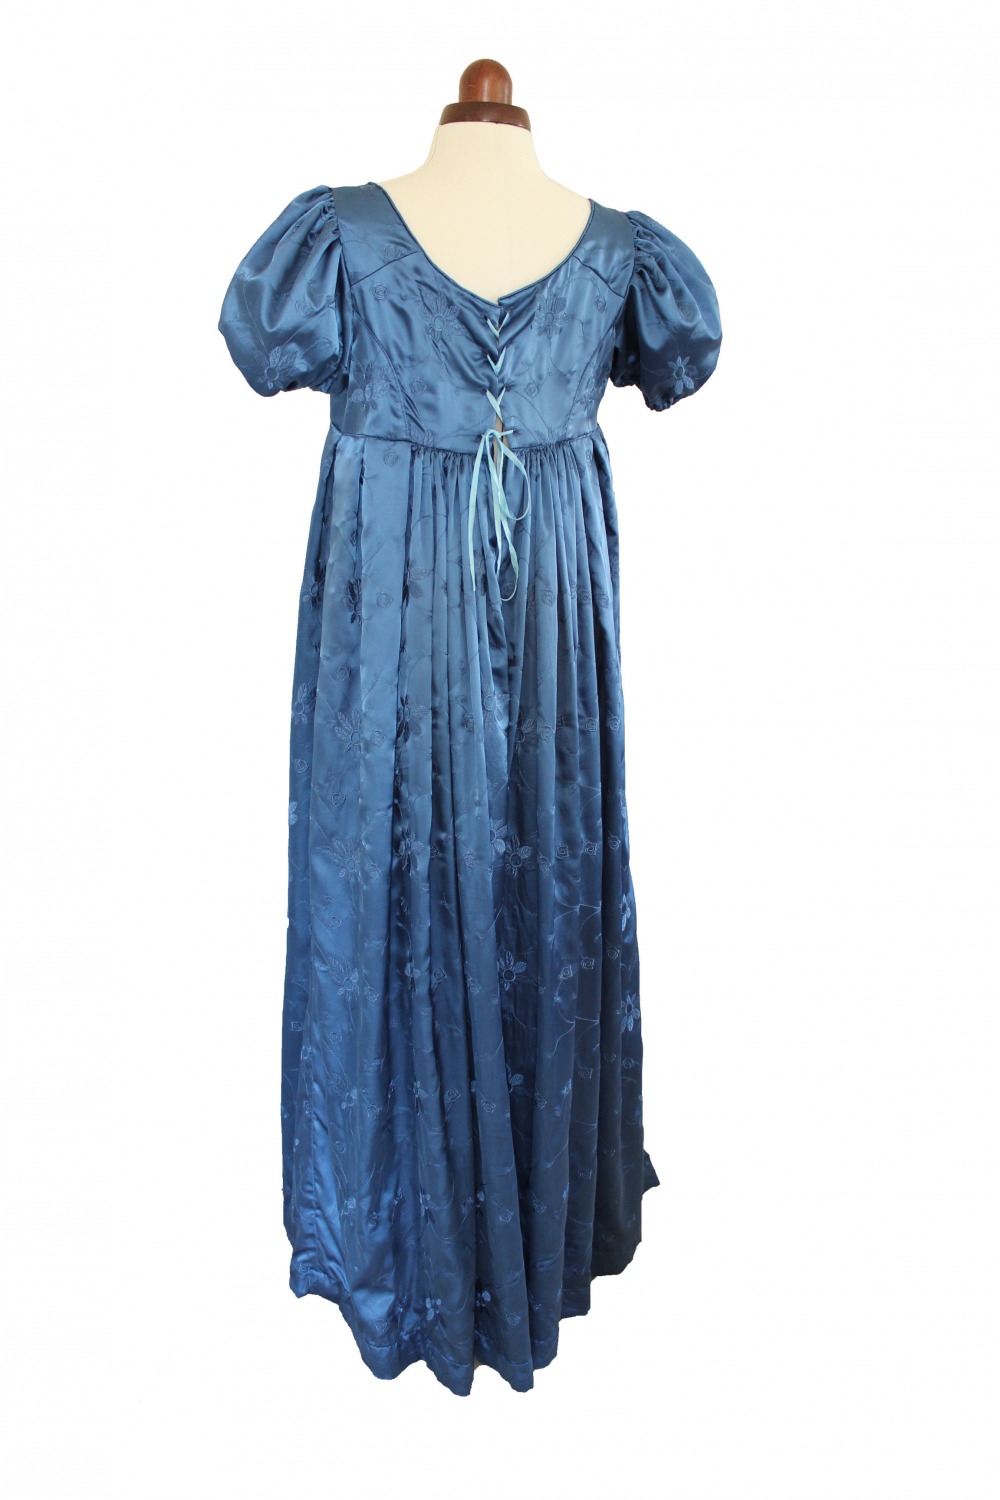 Ladies 19th Century Regency Jane Austen Evening Ball Gown Size 14 - 16 ...